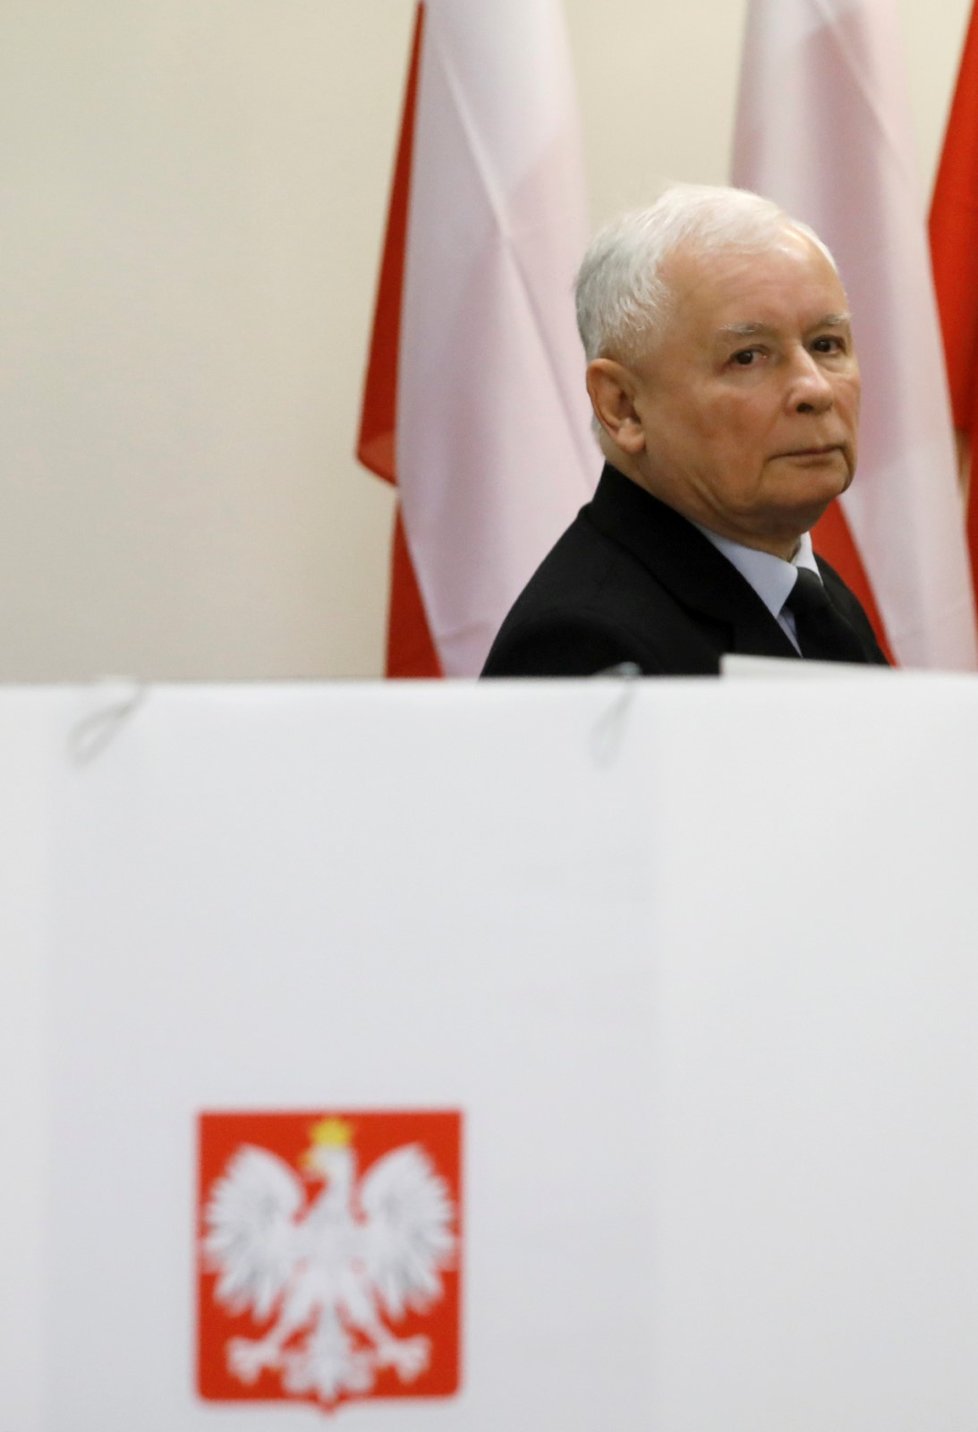 Předseda strany Právo a spravedlnost Jaroslaw Kaczynski ve volební místnosti (13.10.2019)